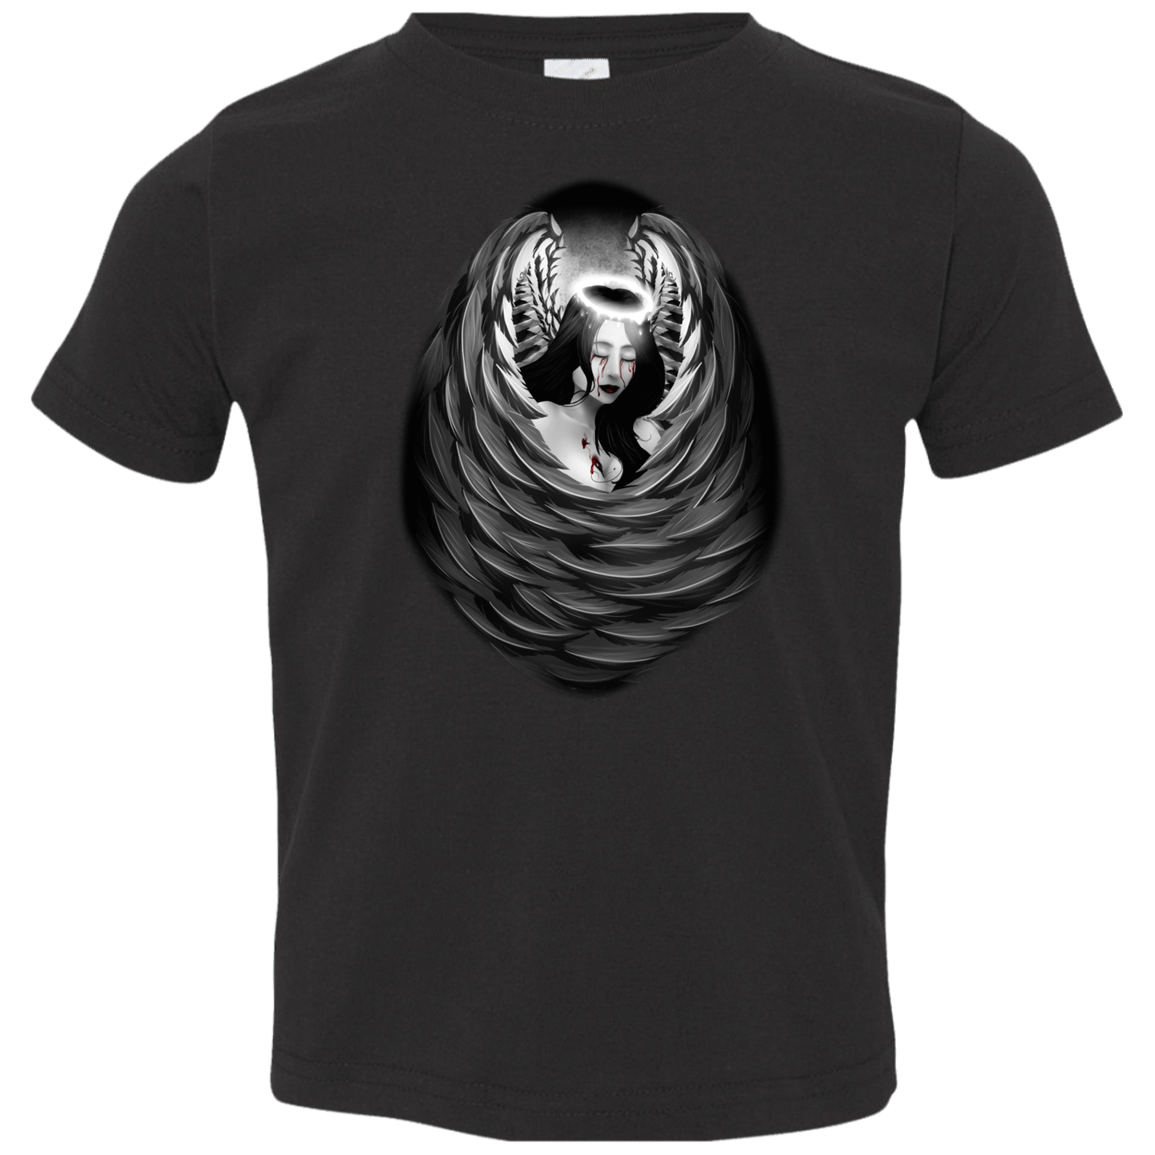 T-Shirts Black / 2T Wild Toddler Premium T-Shirt